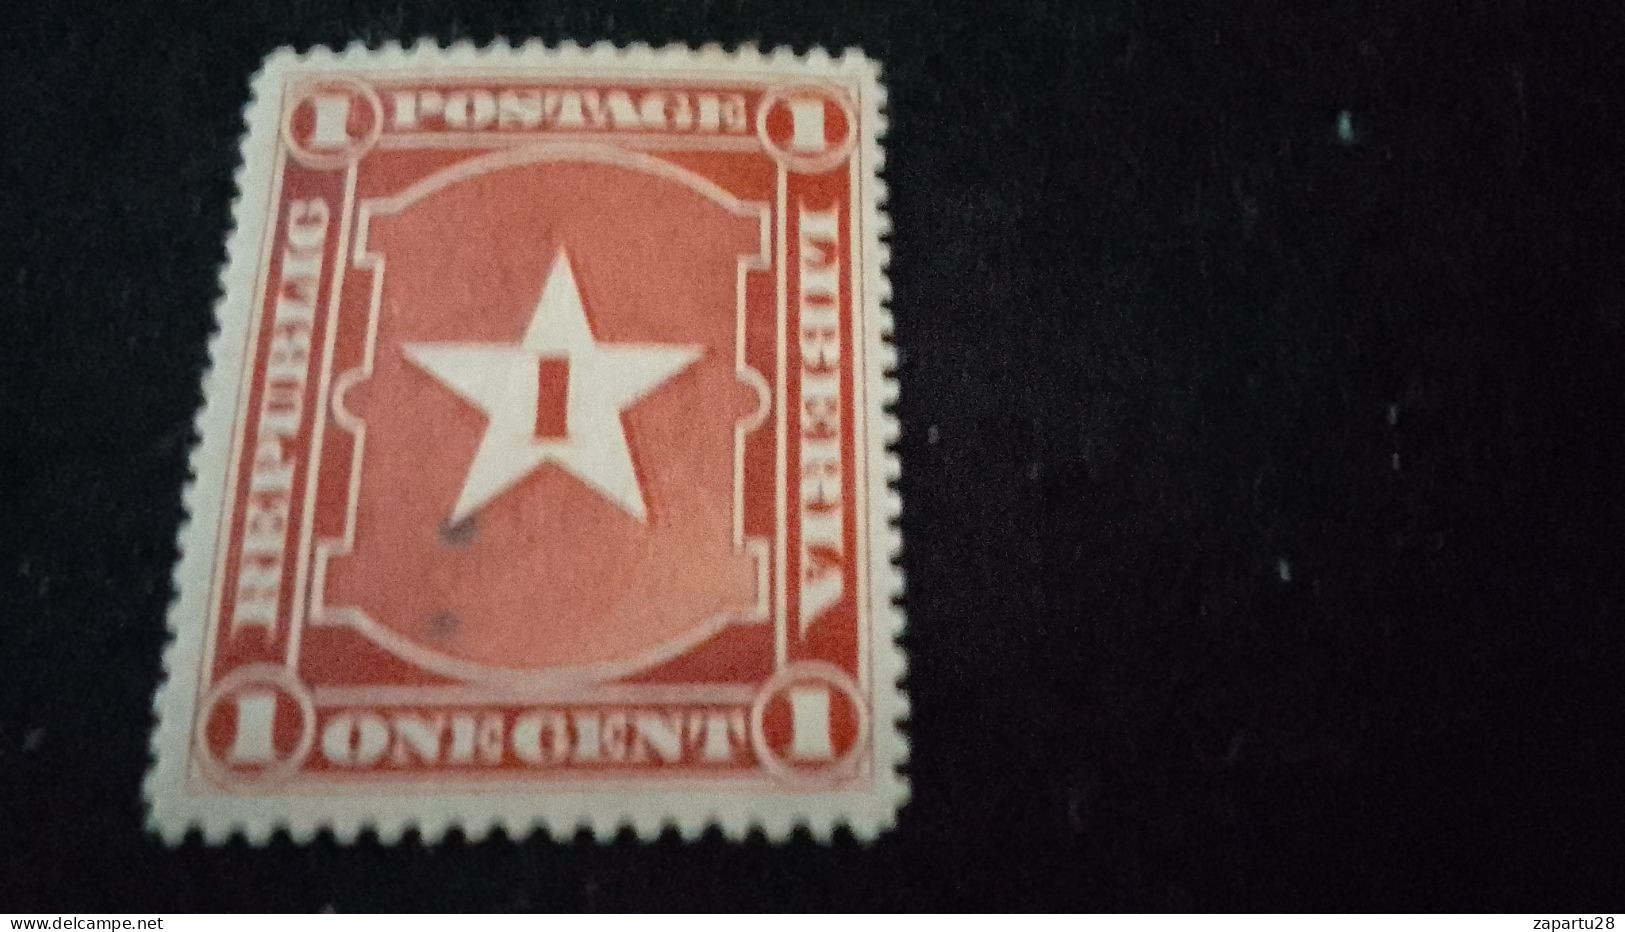 LİBERYA--1892-  1C.      DAMGASIZ - Liberia